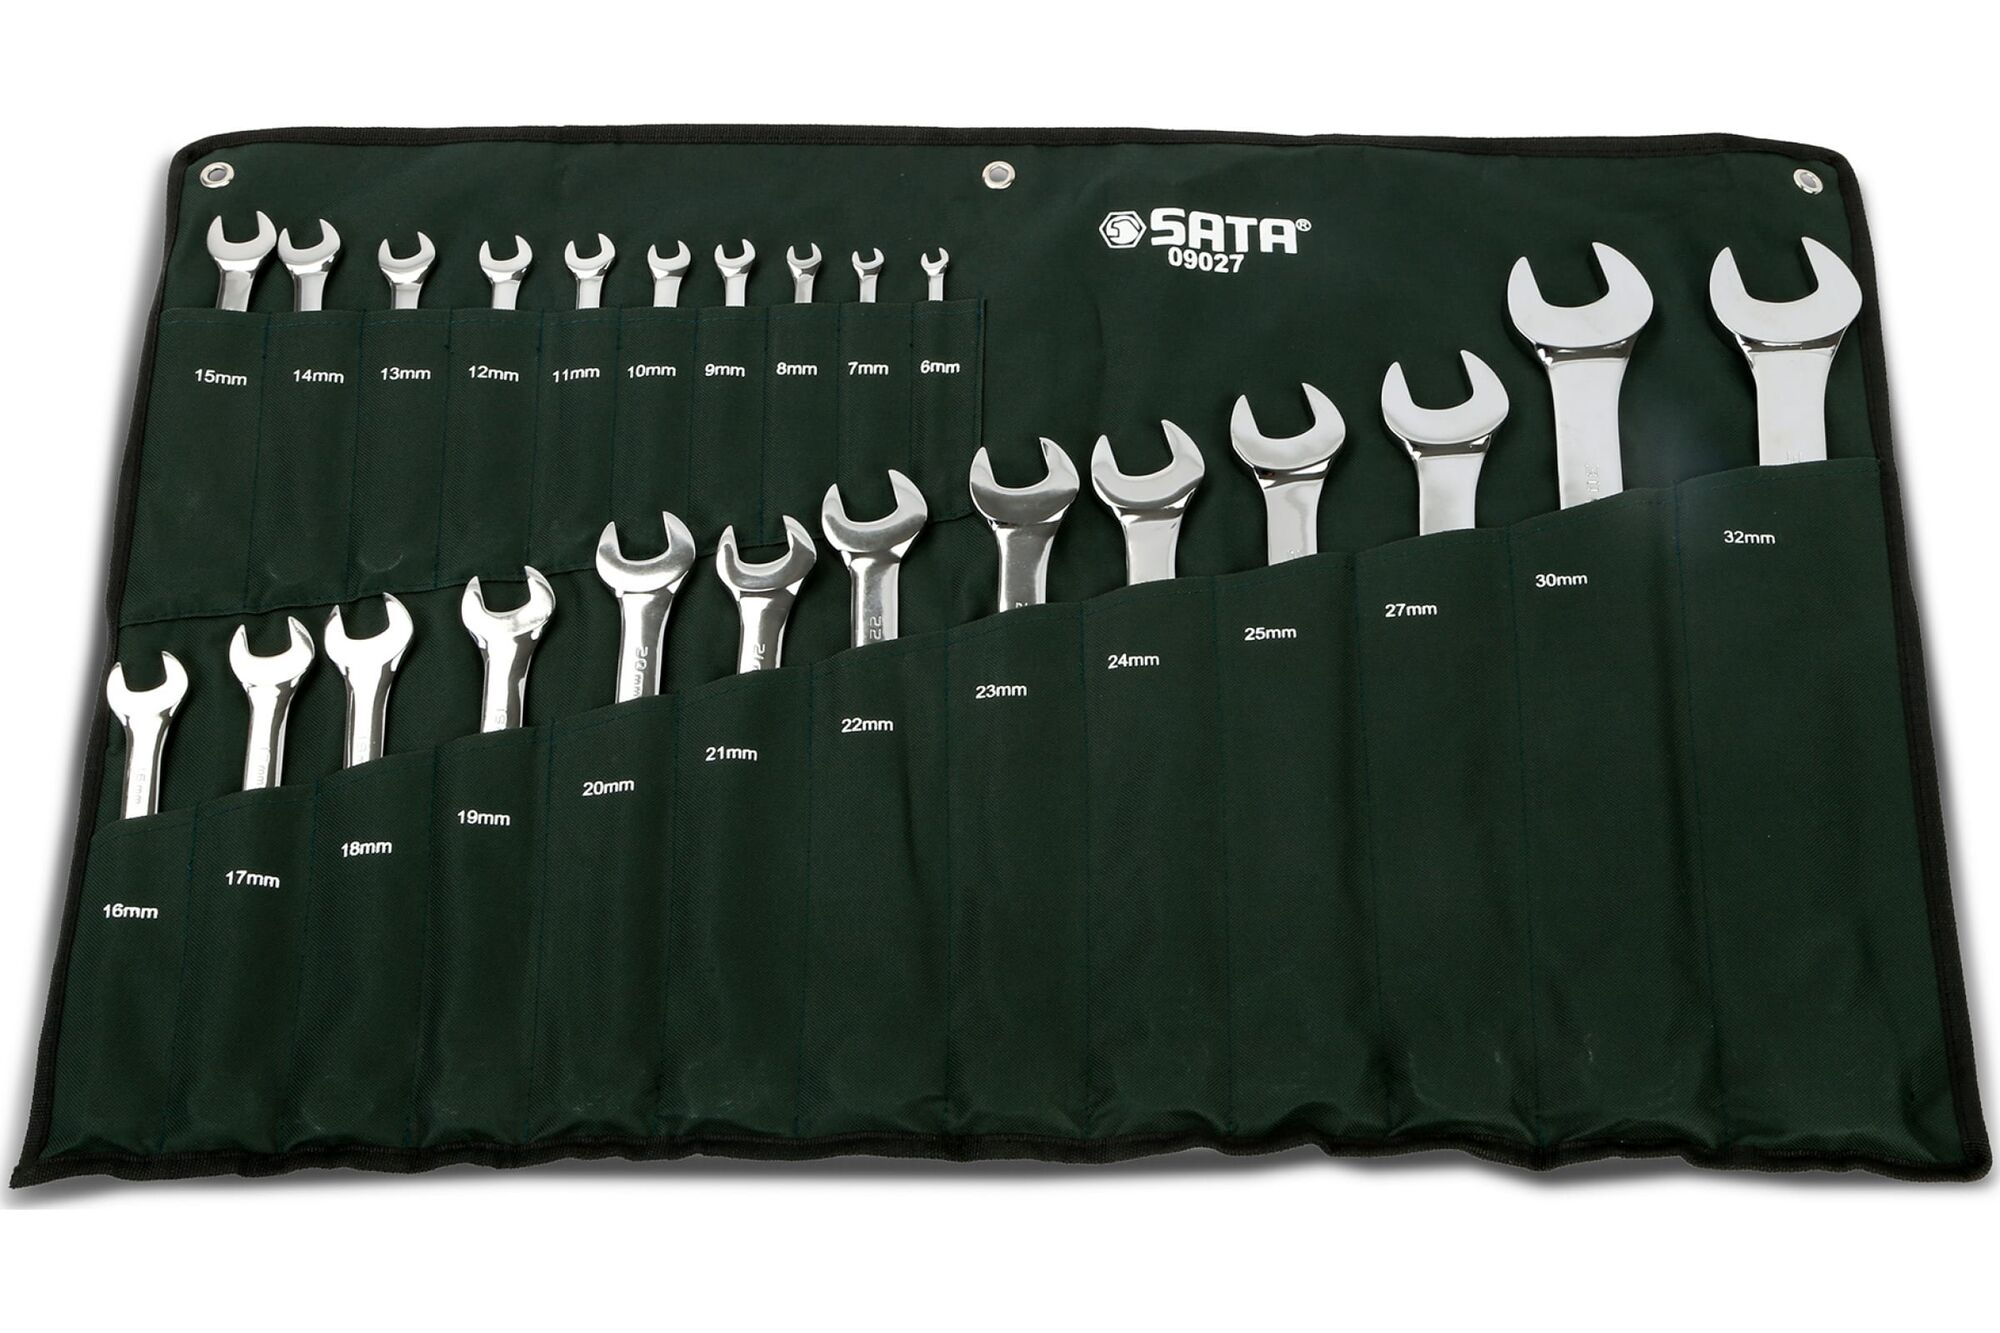 Набор комбинированных ключей SATA CR-V 23пр 6-32мм чехол(сумка)